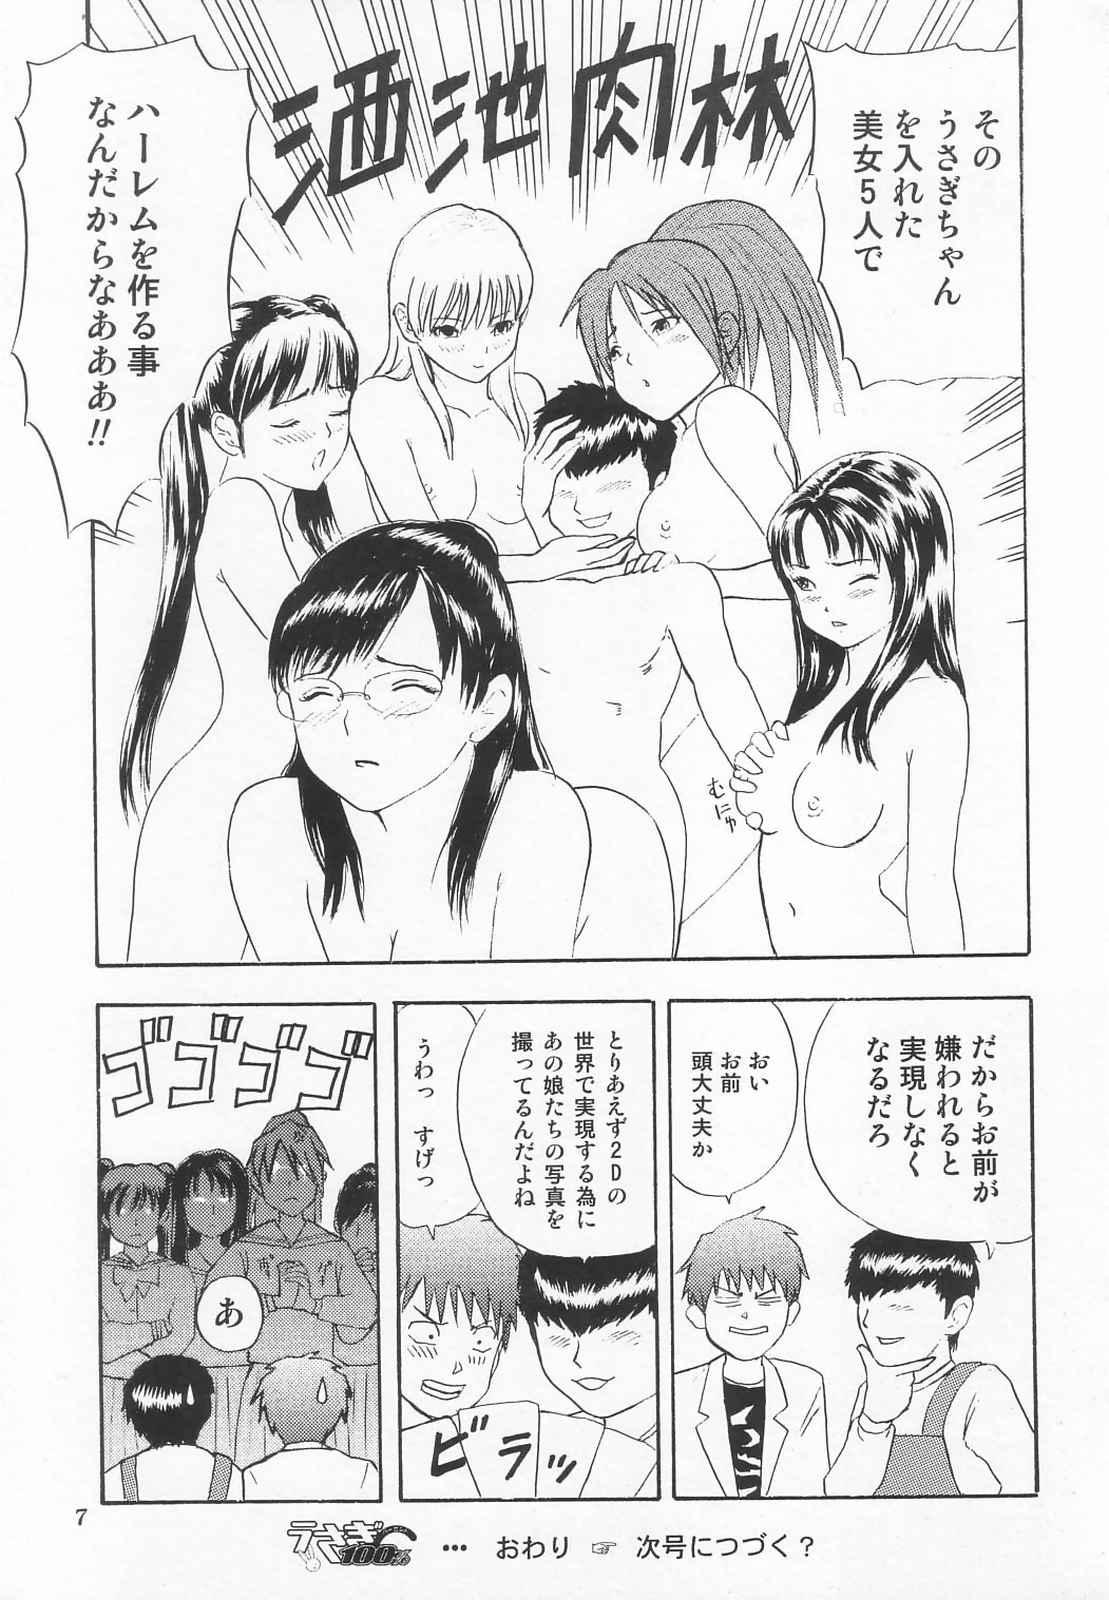 Messy Tokusatsu Magazine x 2003 Fuyu Gou - Sailor moon Ichigo 100 No Condom - Page 9